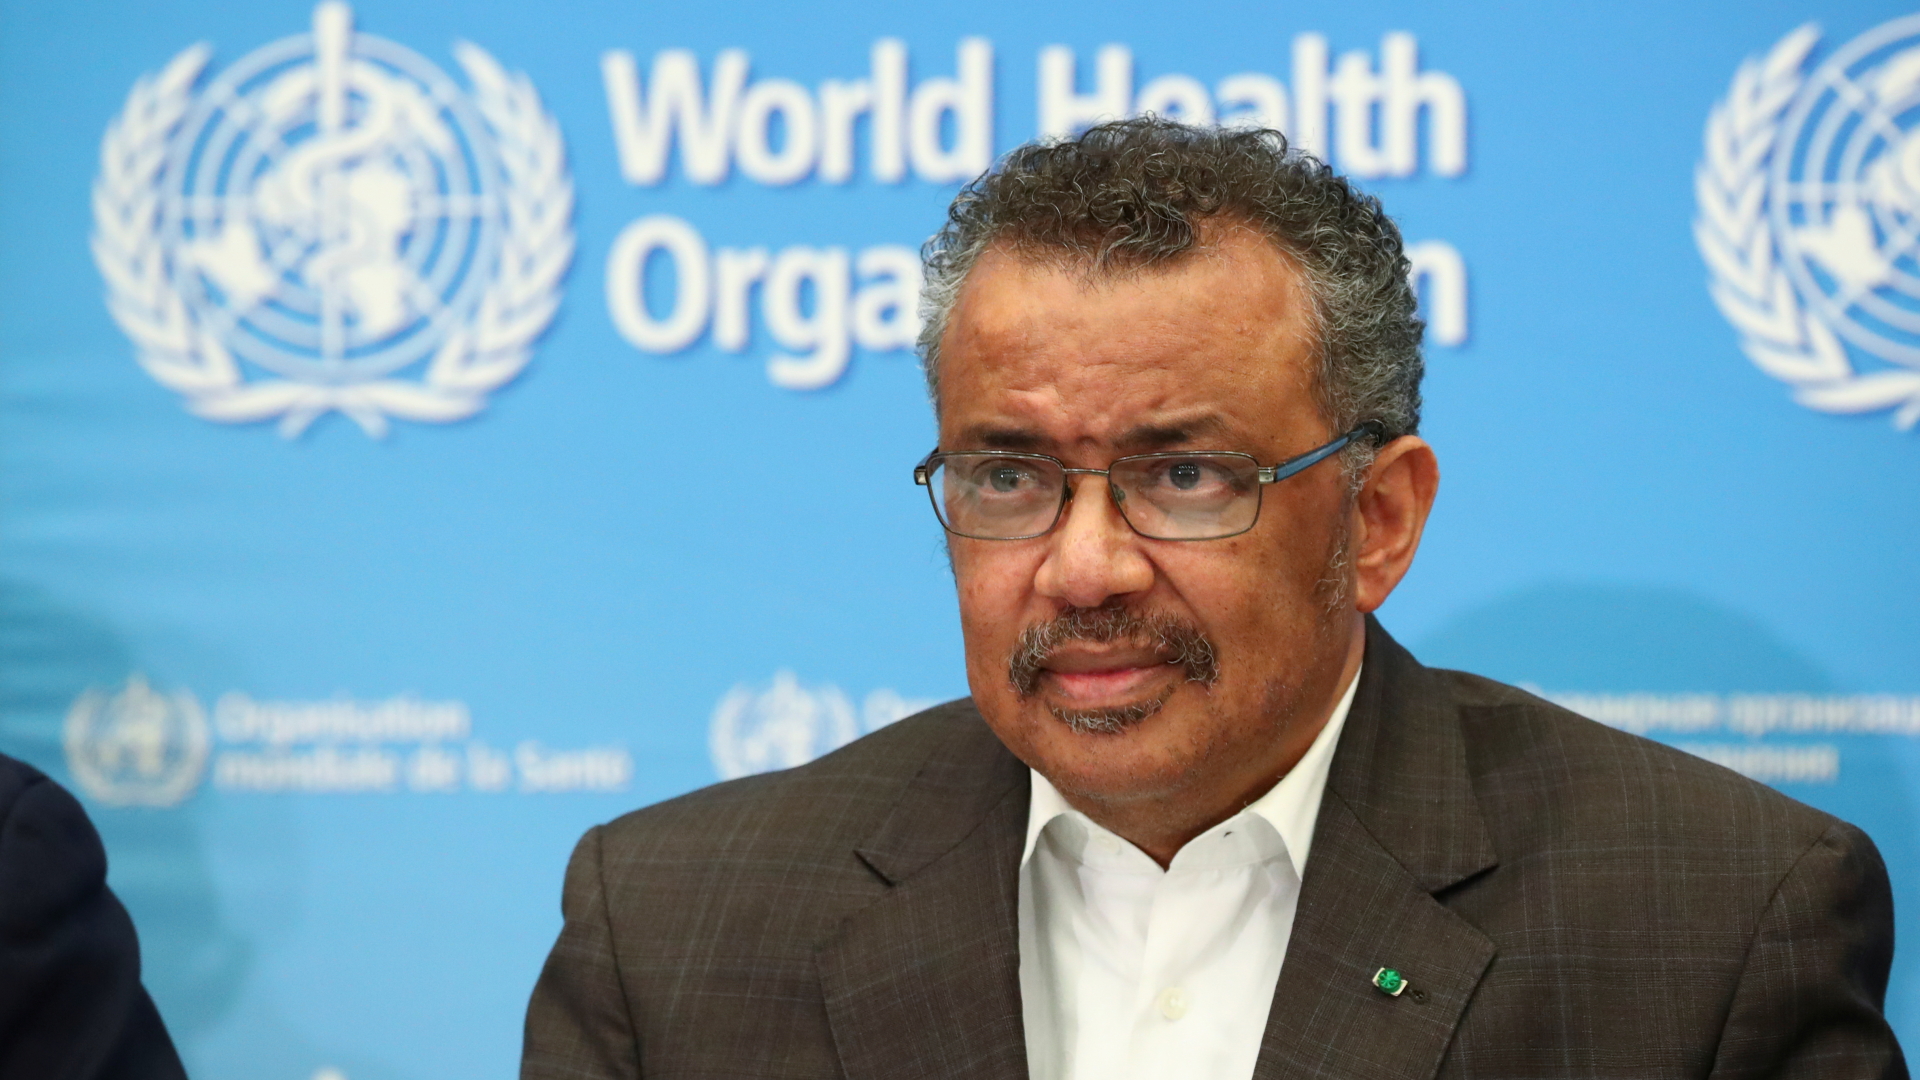  WHO-Direktor Tedros Adhanom Ghebreyesus spricht auf der Sitzung zum Coronavirus Ende januar 2020. | REUTERS